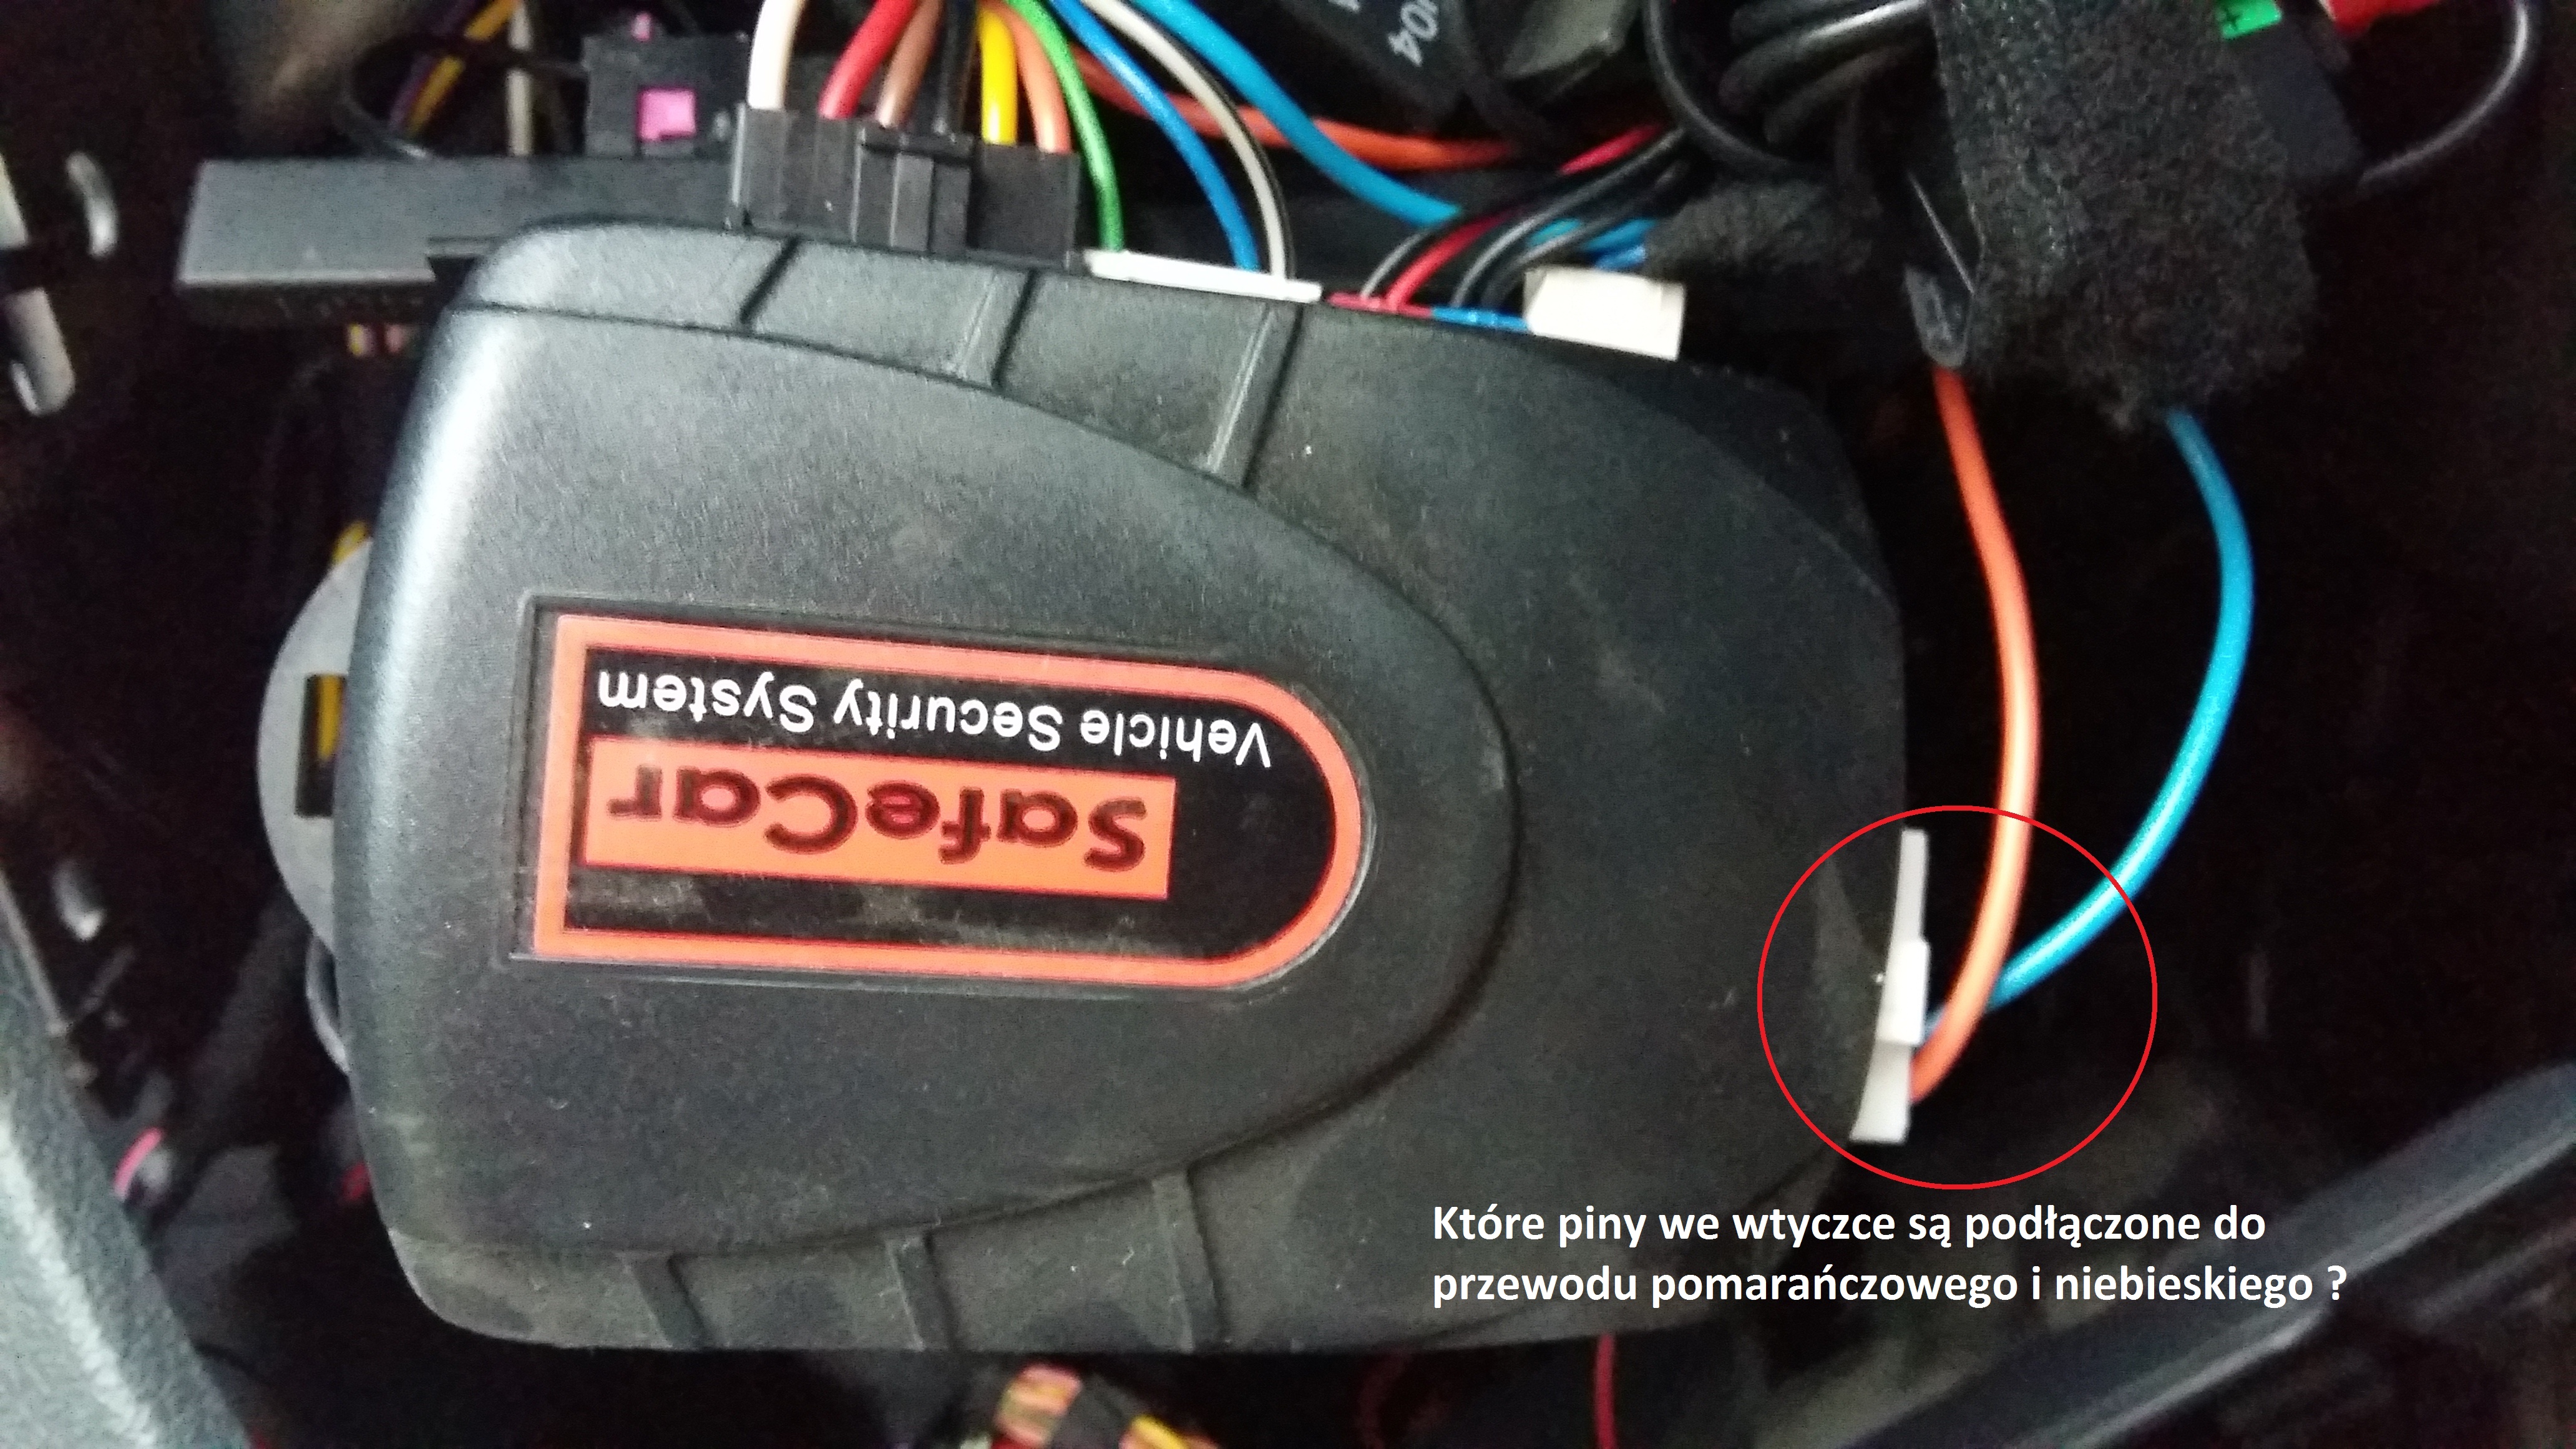 VW Touran SafeCar 440 nie zamyka CZ. elektroda.pl